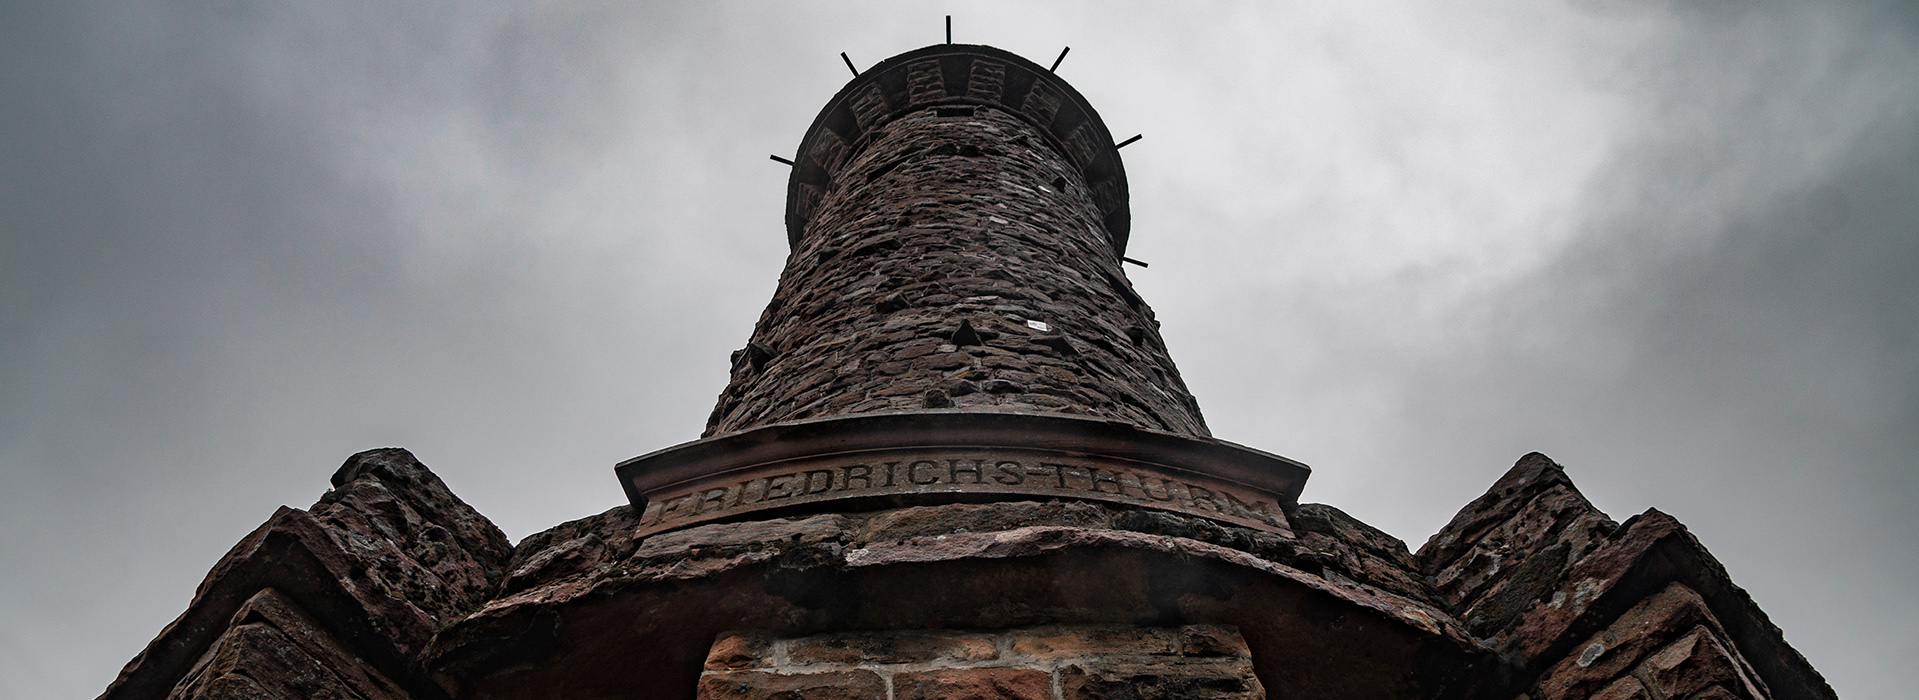 Blick vom Fuß des Friedrichsturm an der Badener Höhe zum Himmel. Der Turm besteht aus Steinen, die Inschrift über dem Eingang lautet "Friedrichs-Thurm".